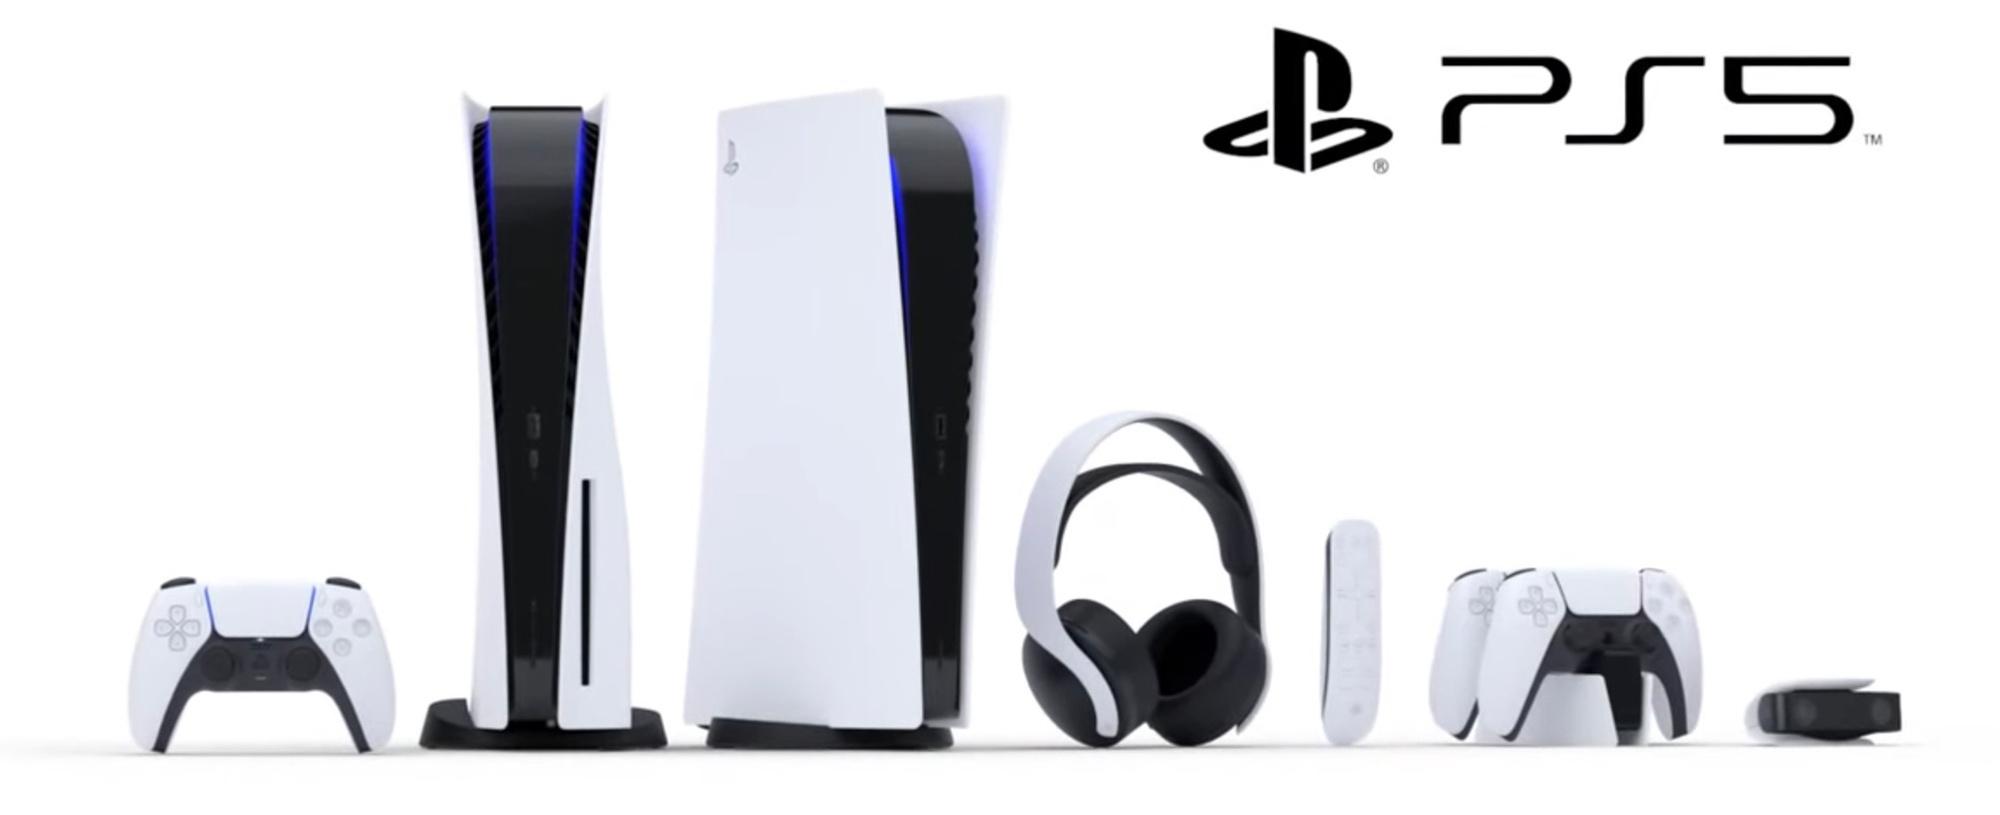 De twee PS5-modellen en de nieuwe accessoires voor de console.